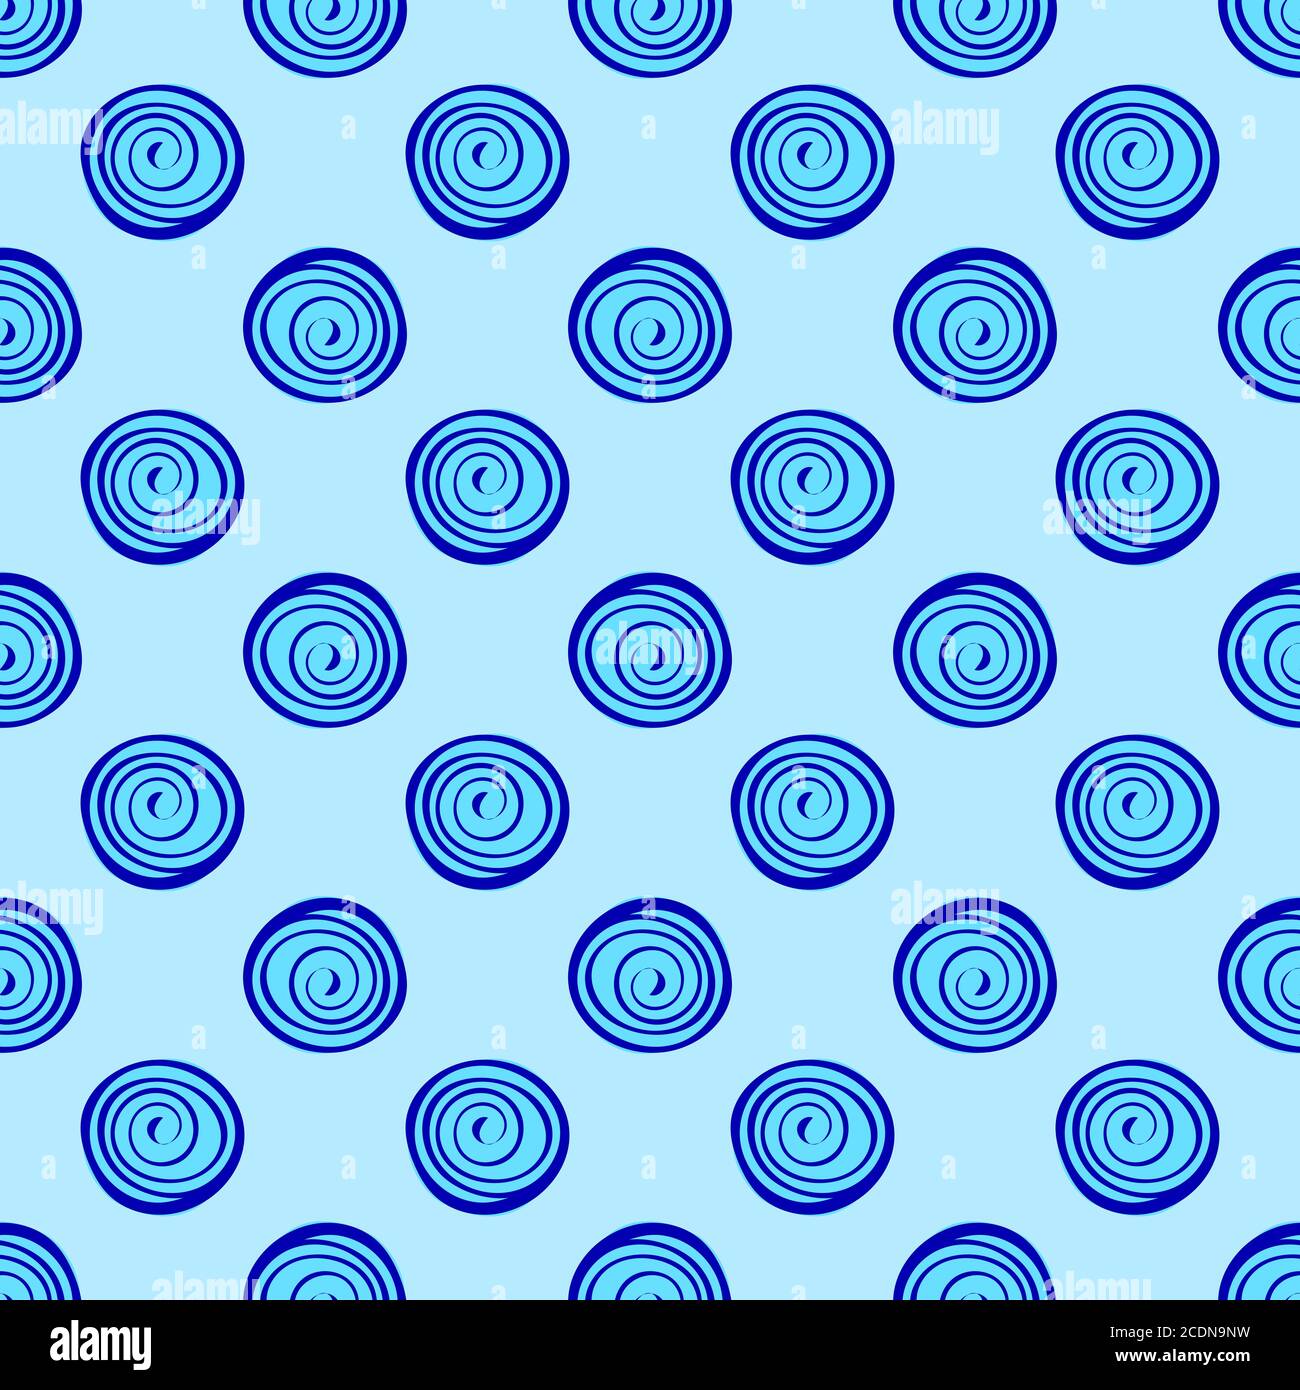 Zusammenfassung Hintergrund blaue Kreise nahtlose Muster Stockfoto